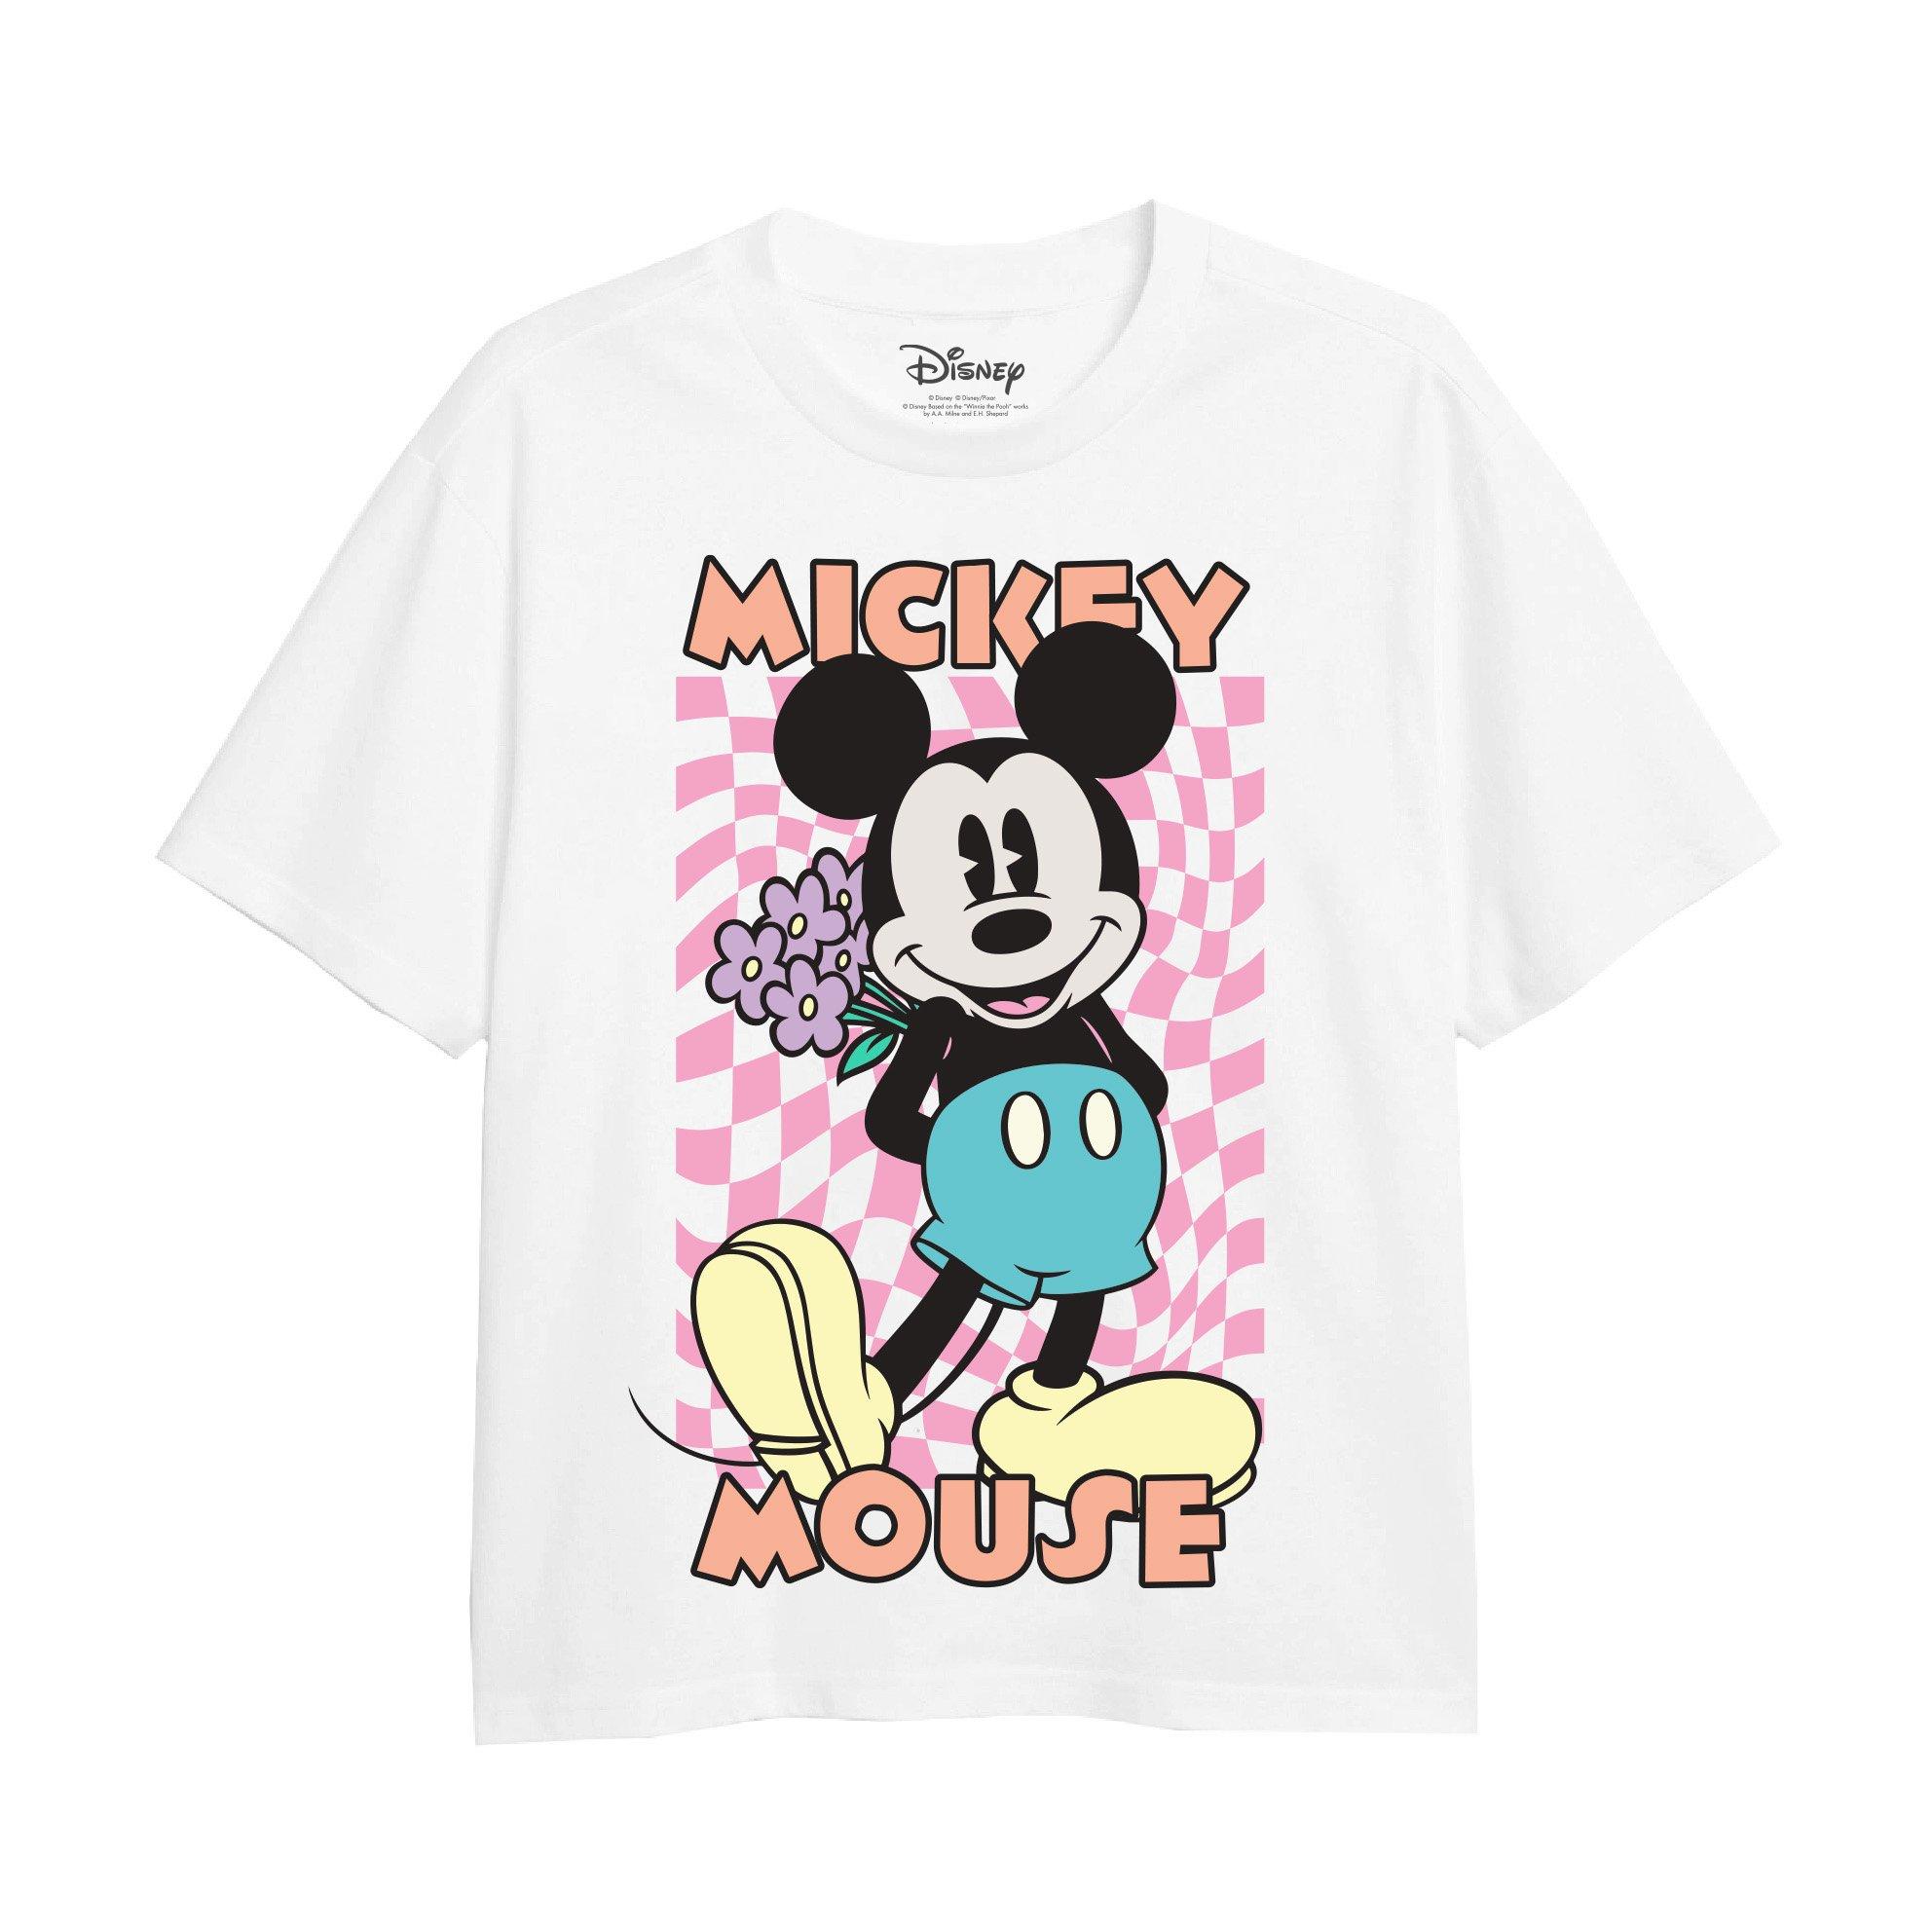 Футболка в клетку с Микки Маусом Disney, белый футболка в ребруску с микки и минни маус disney zara красный